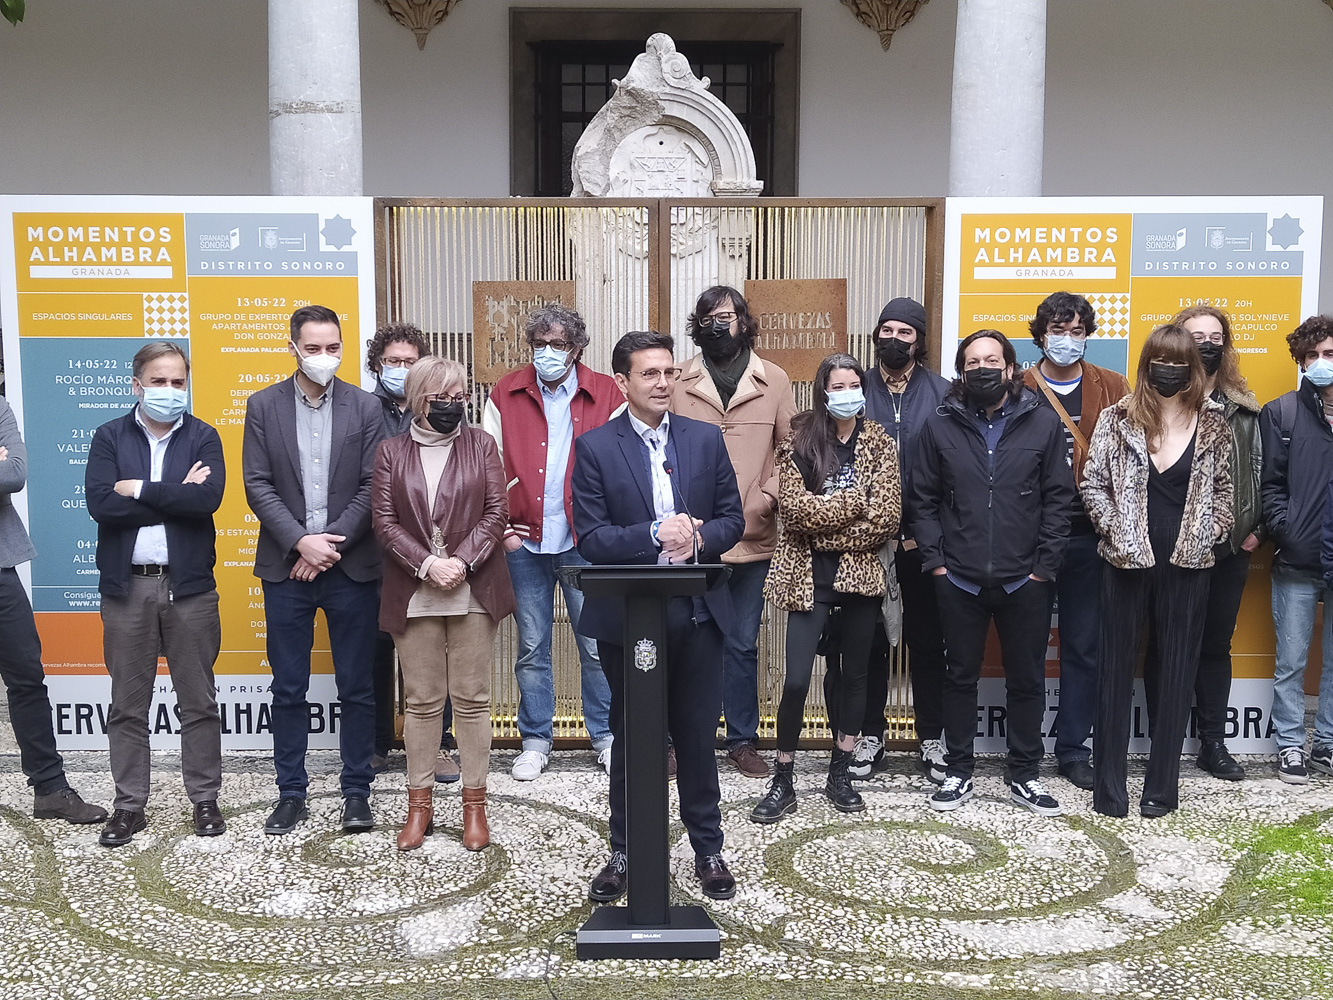 Vuelve «Momentos Alhambra Distrito Sonoro» a las plazas de Granada